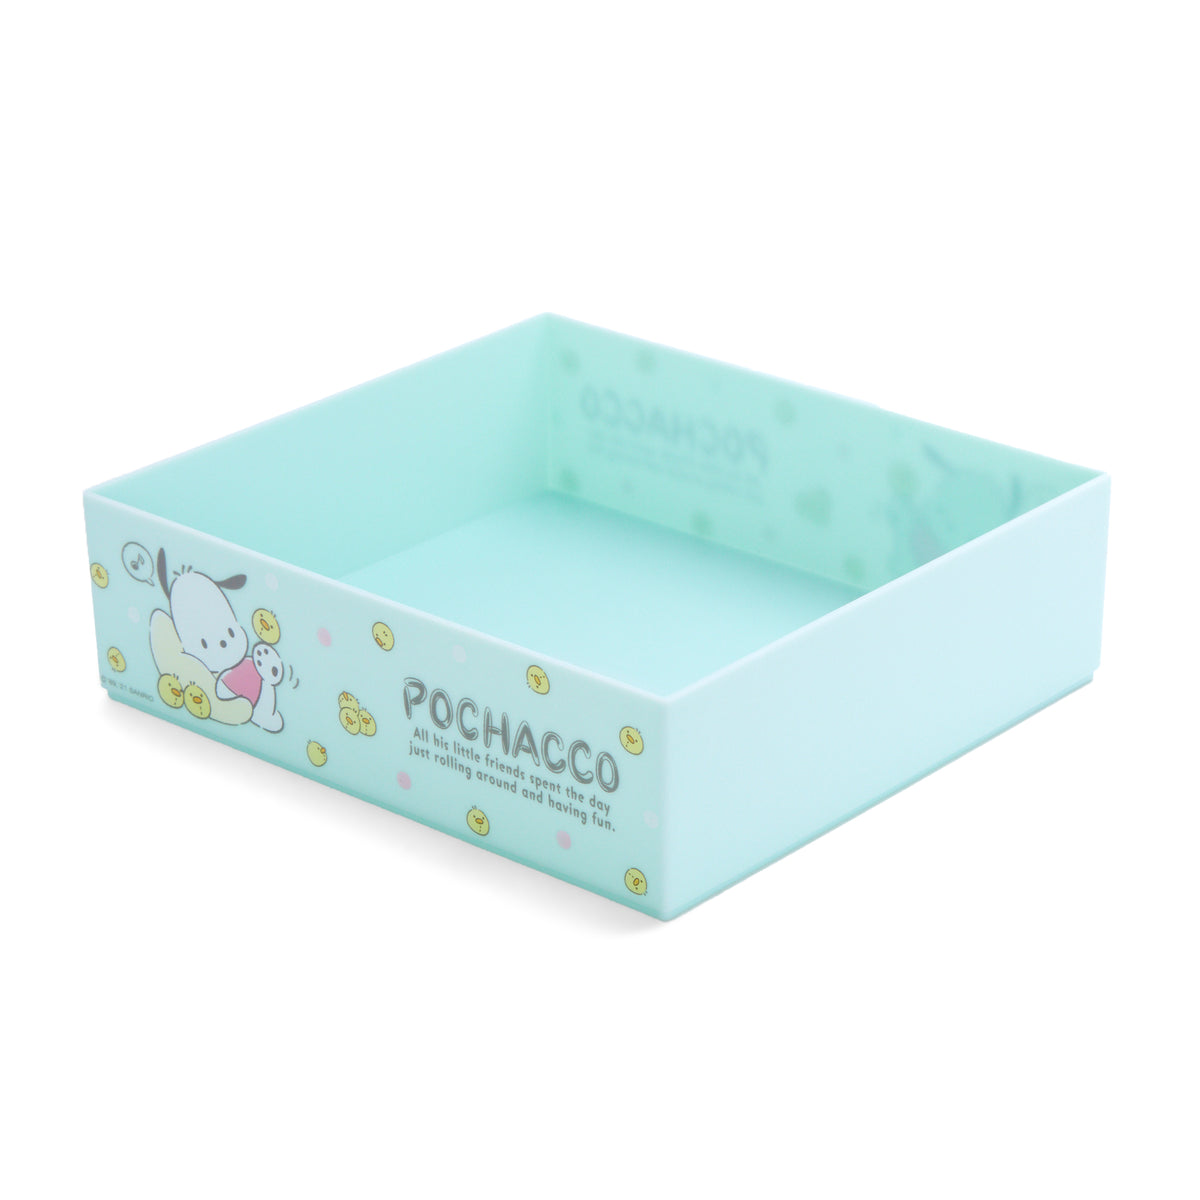 Pochacco Organizer Tray (M) Home Goods Japan Original   